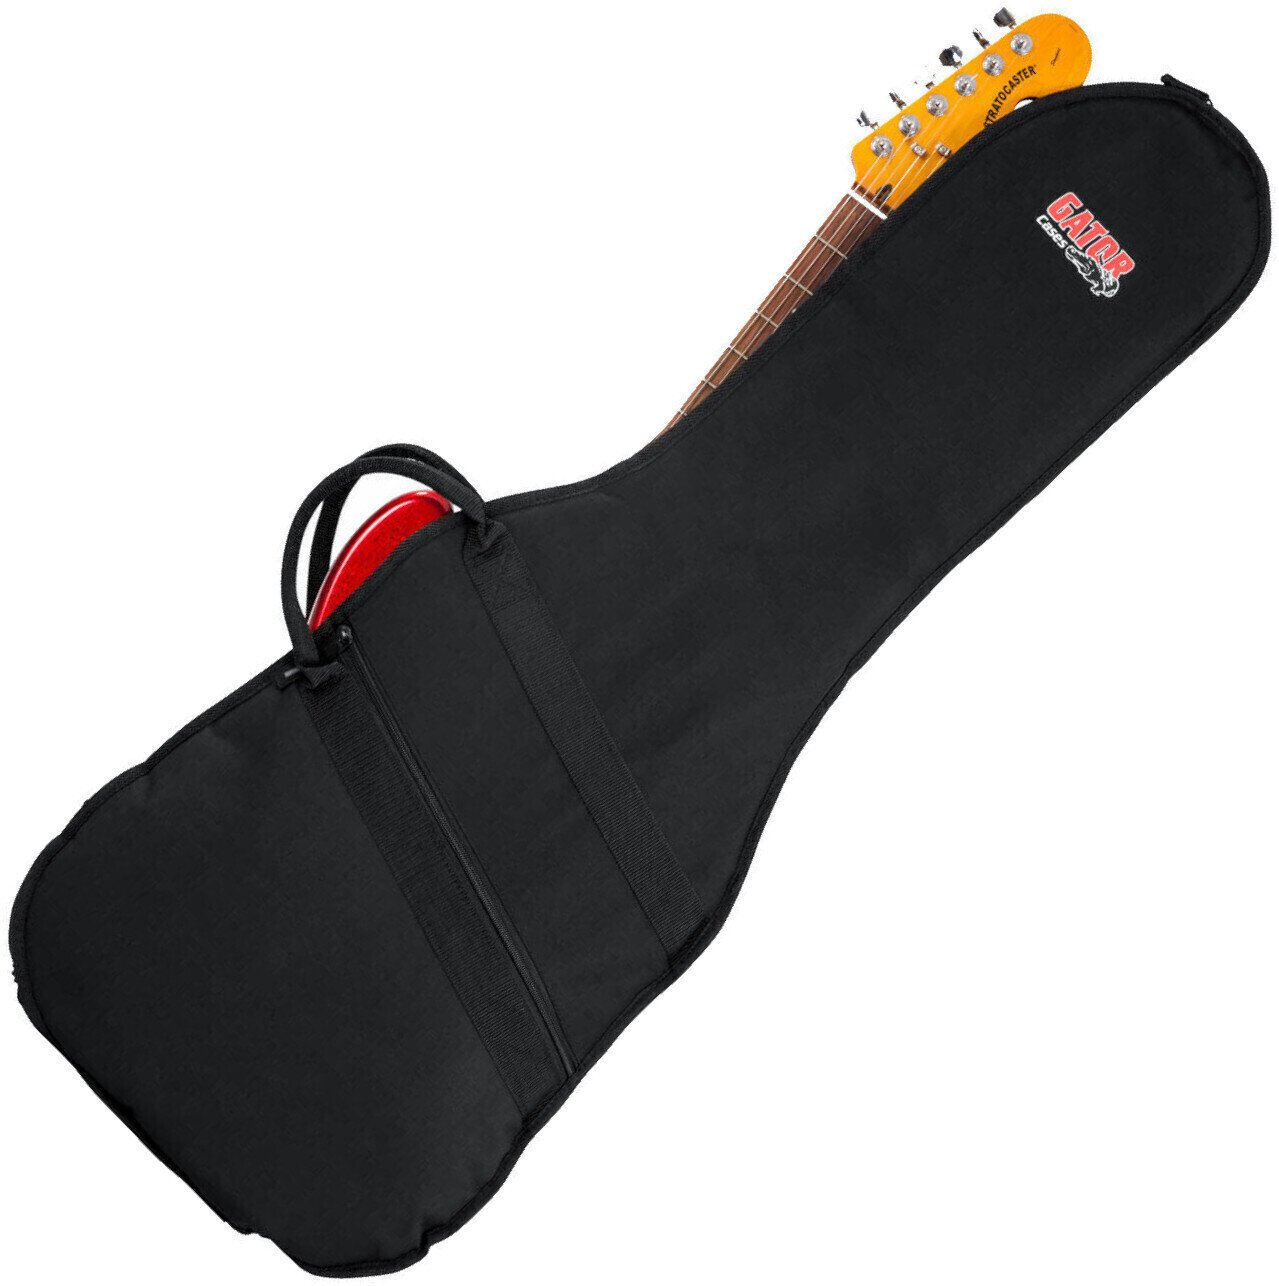 Bolsa para guitarra eléctrica Gator GBE-ELECT Bolsa para guitarra eléctrica